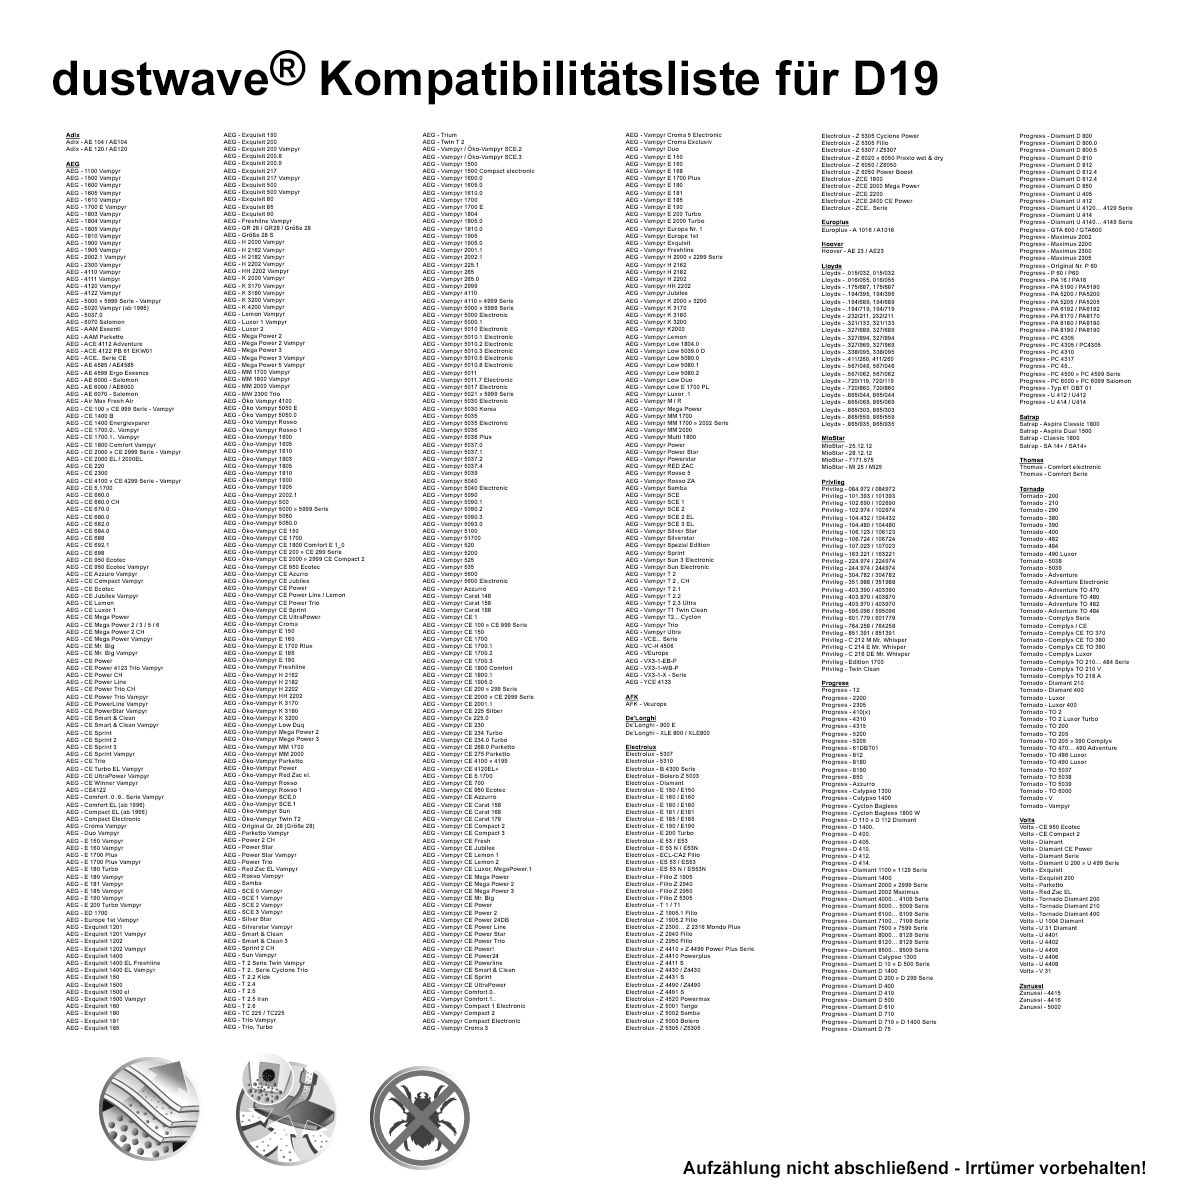 Dustwave® 10 Staubsaugerbeutel für AEG Vampyr H 2000 - hocheffizient, mehrlagiges Mikrovlies mit Hygieneverschluss - Made in Germany